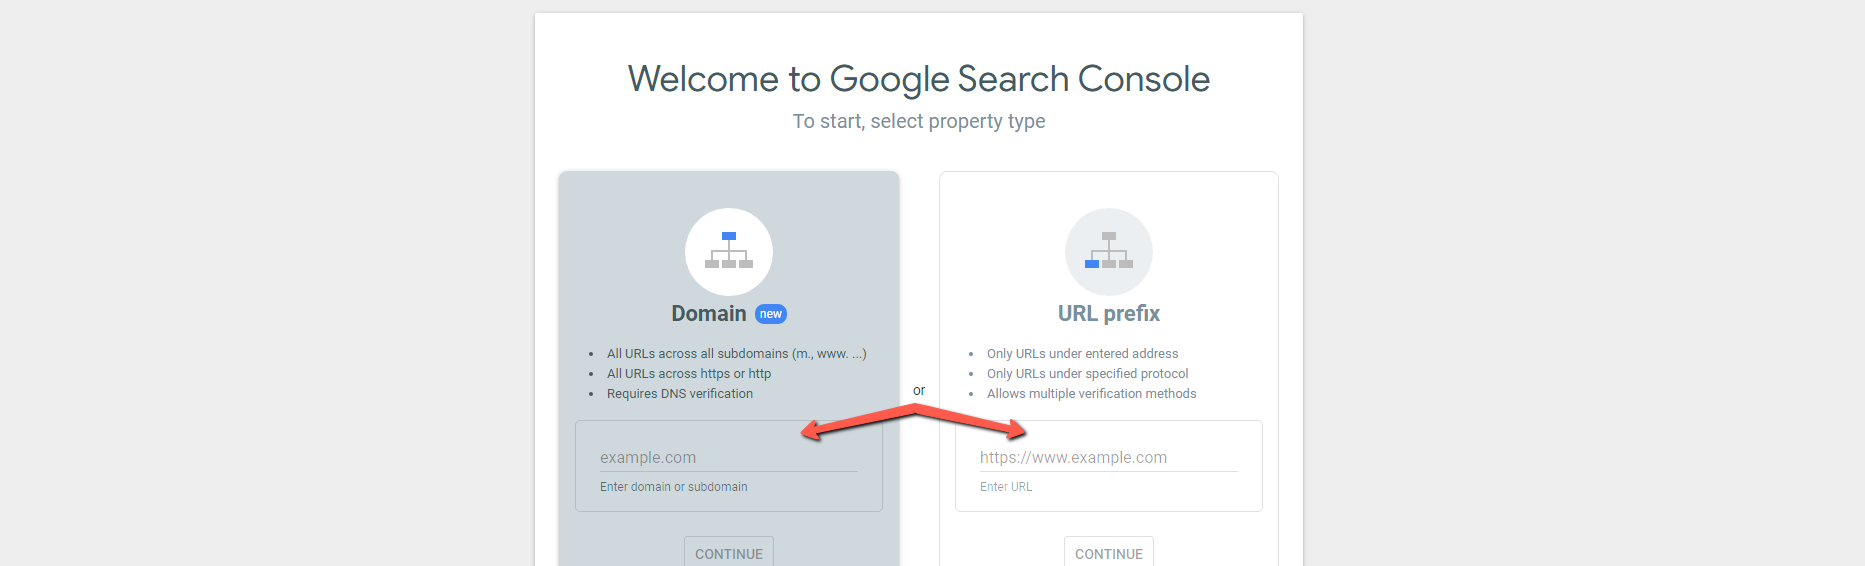 Un ejemplo de los principiantes al configurar una cuenta de Google Search Console